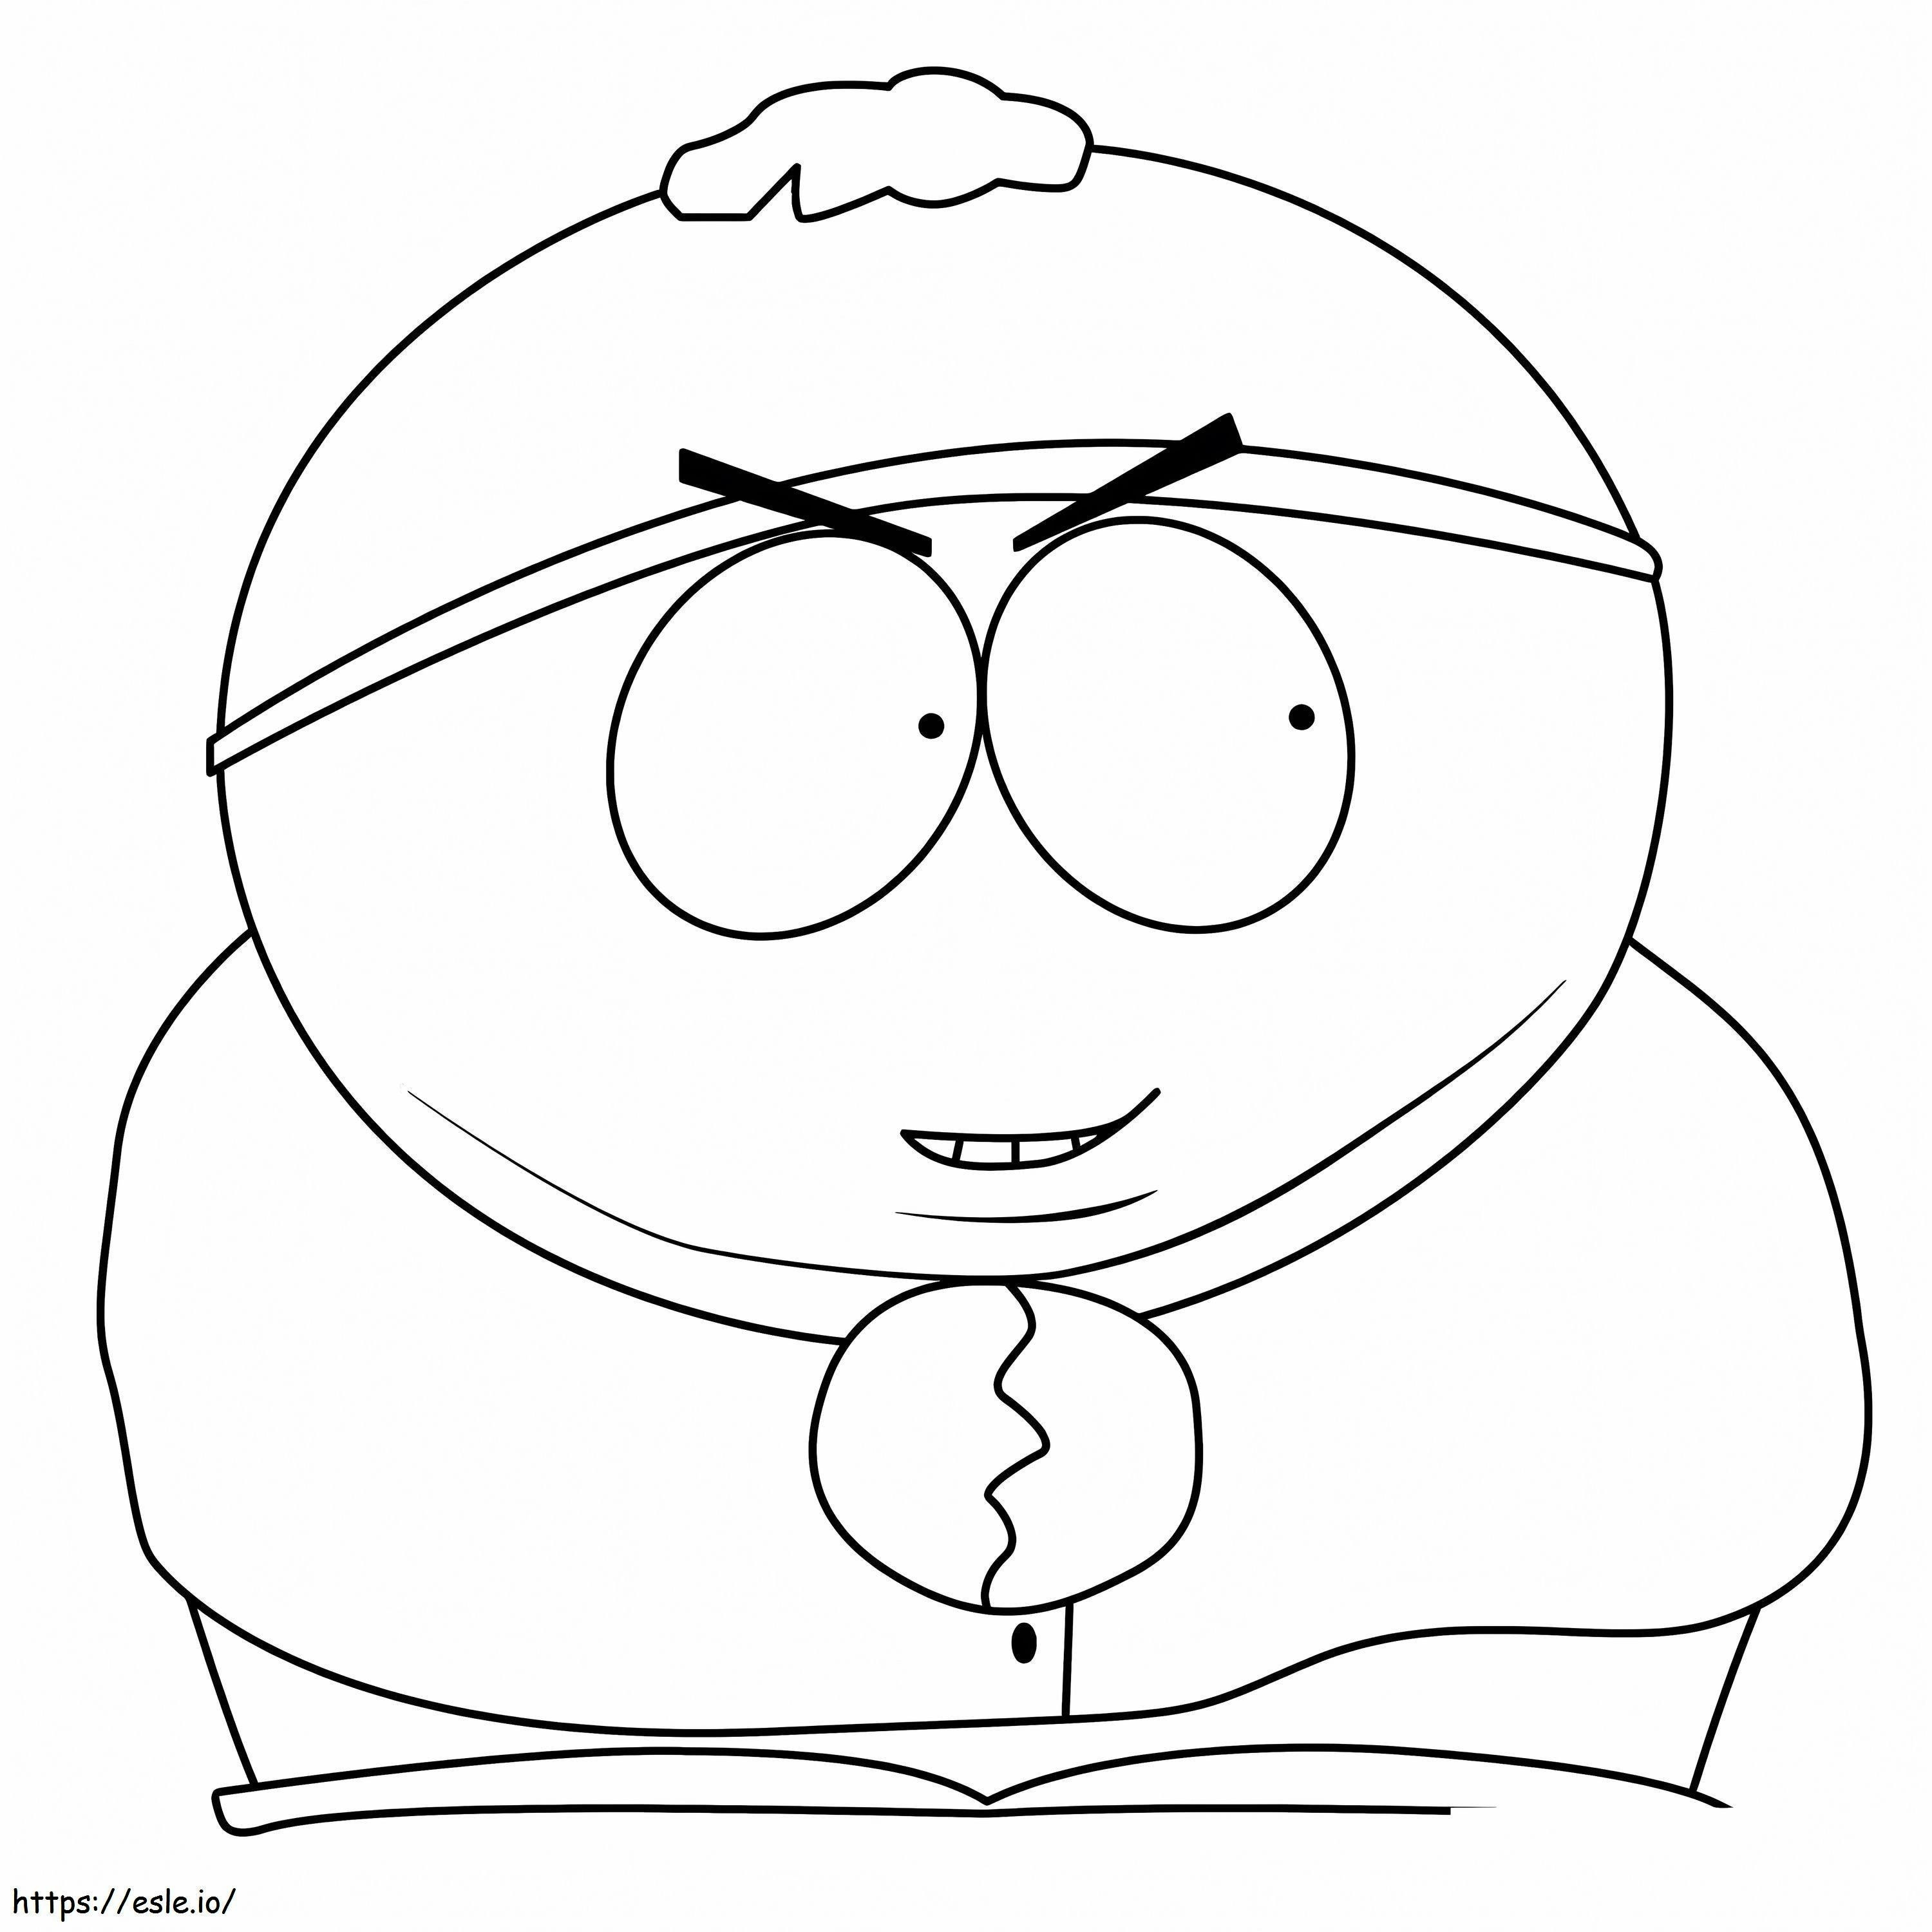 Eric Cartman3 kleurplaat kleurplaat